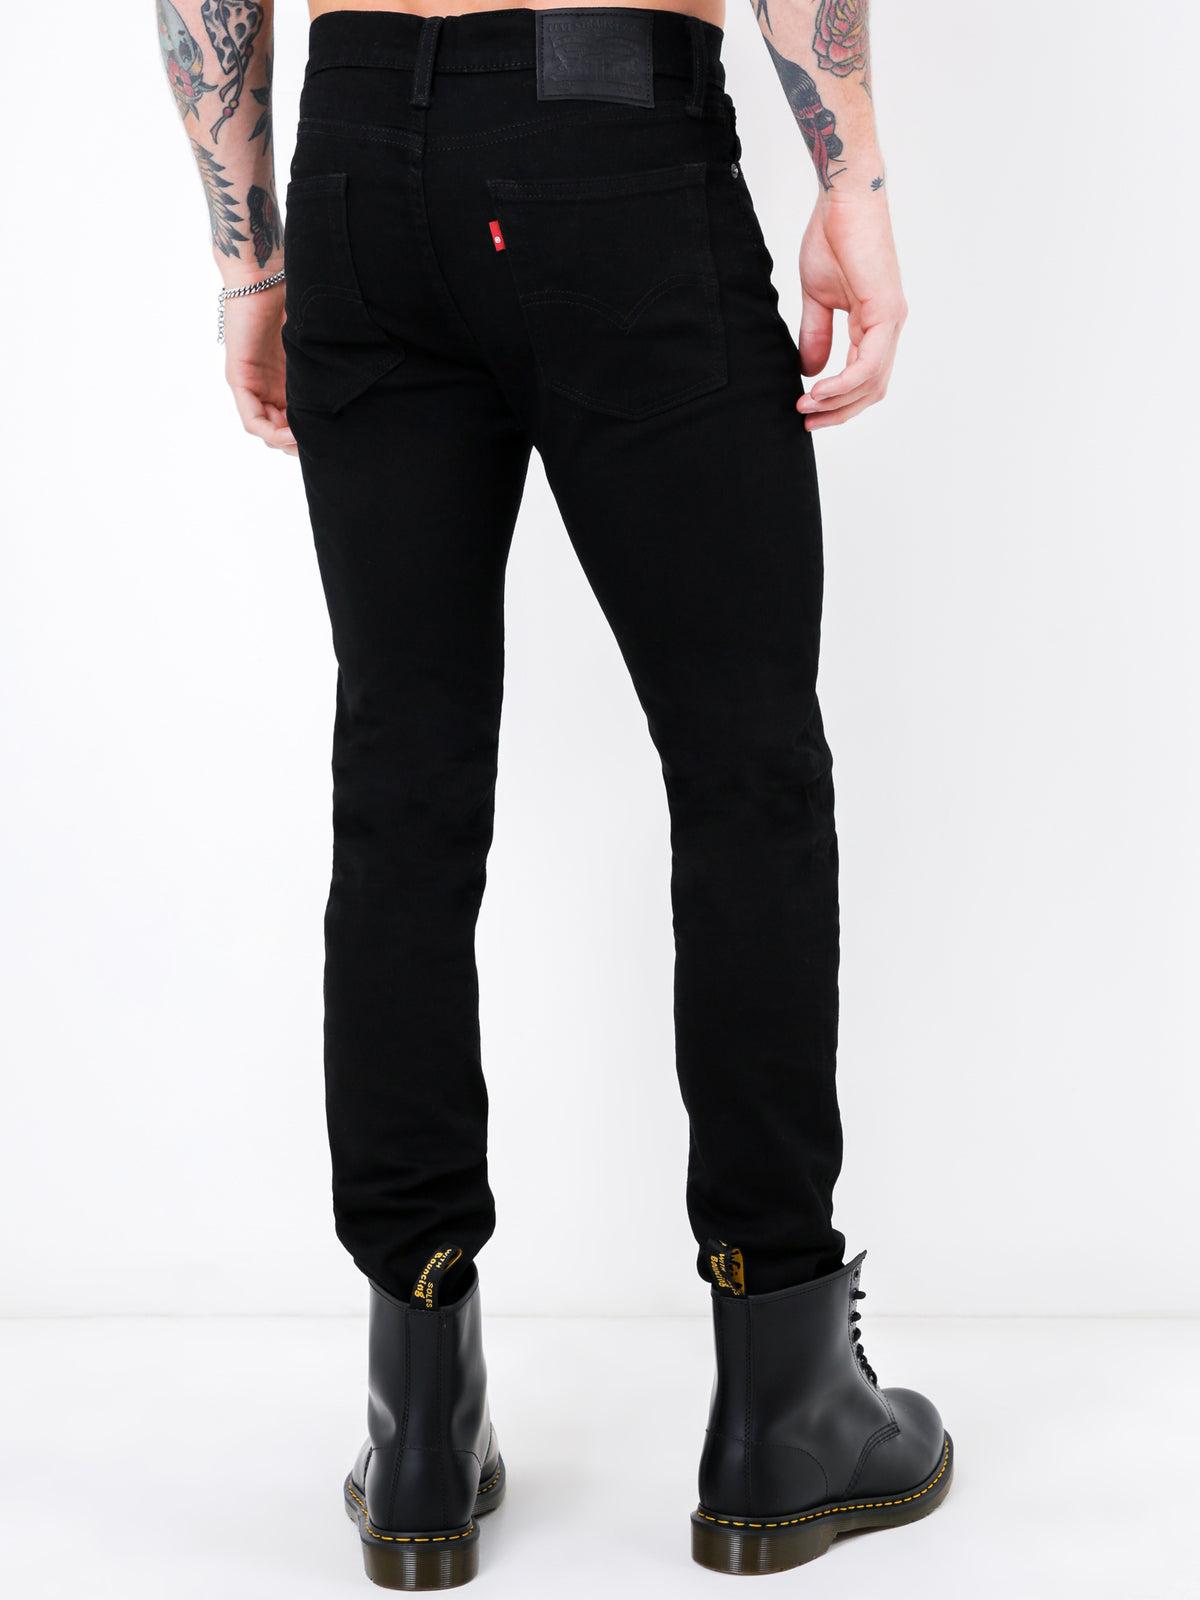 510 Skinny Fit Jeans in Nightshine Black Denim